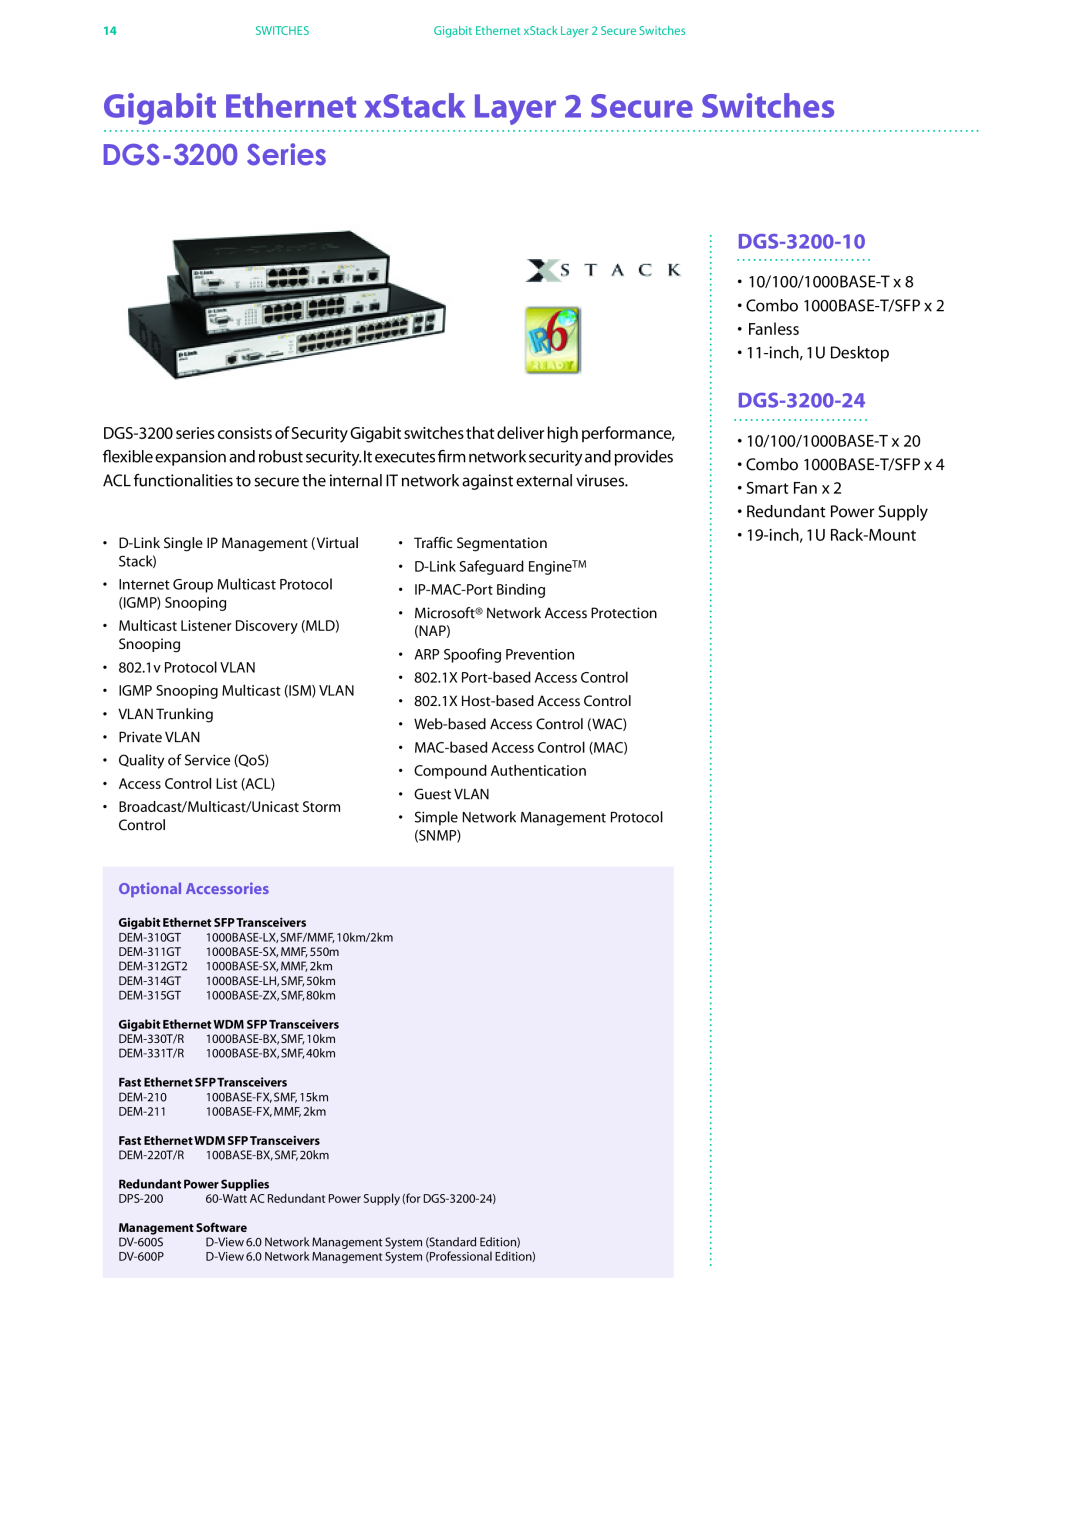 D-Link DES-7200 manual Gigabit Ethernet xStack Layer 2 Secure Switches, DGS-3200 Series, DGS-3200-10, DGS-3200-24 